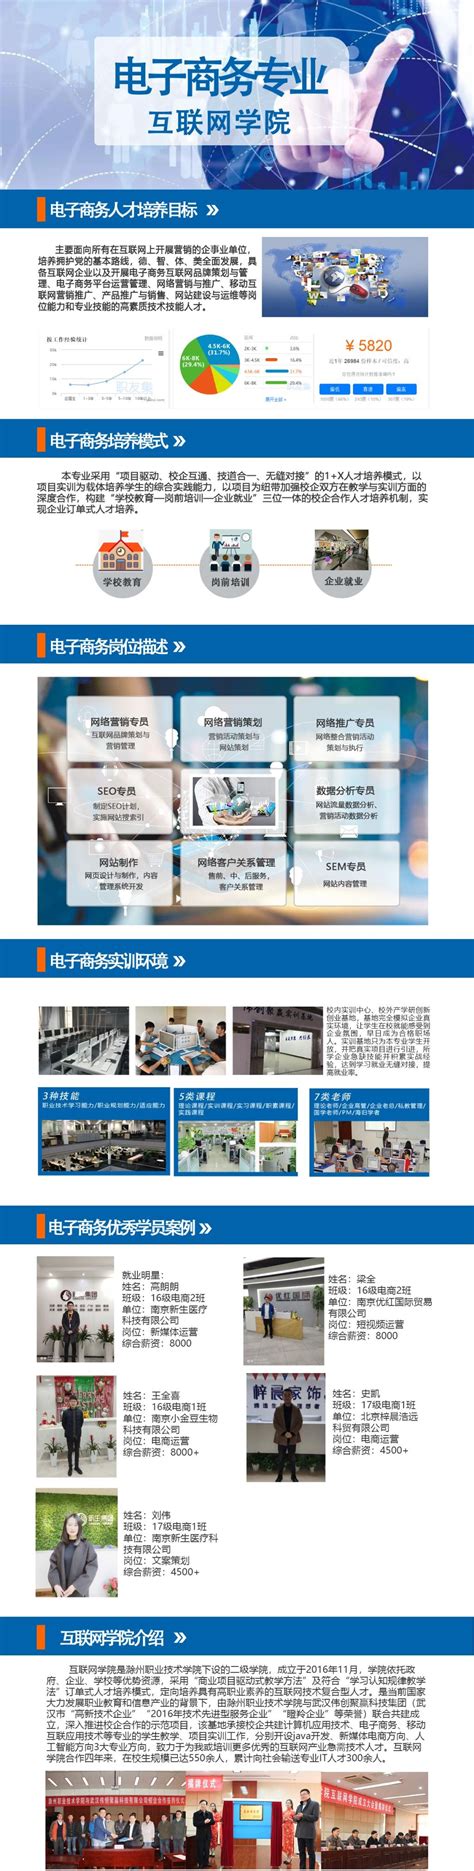 电子商务-互联网学院-滁州职业技术学院